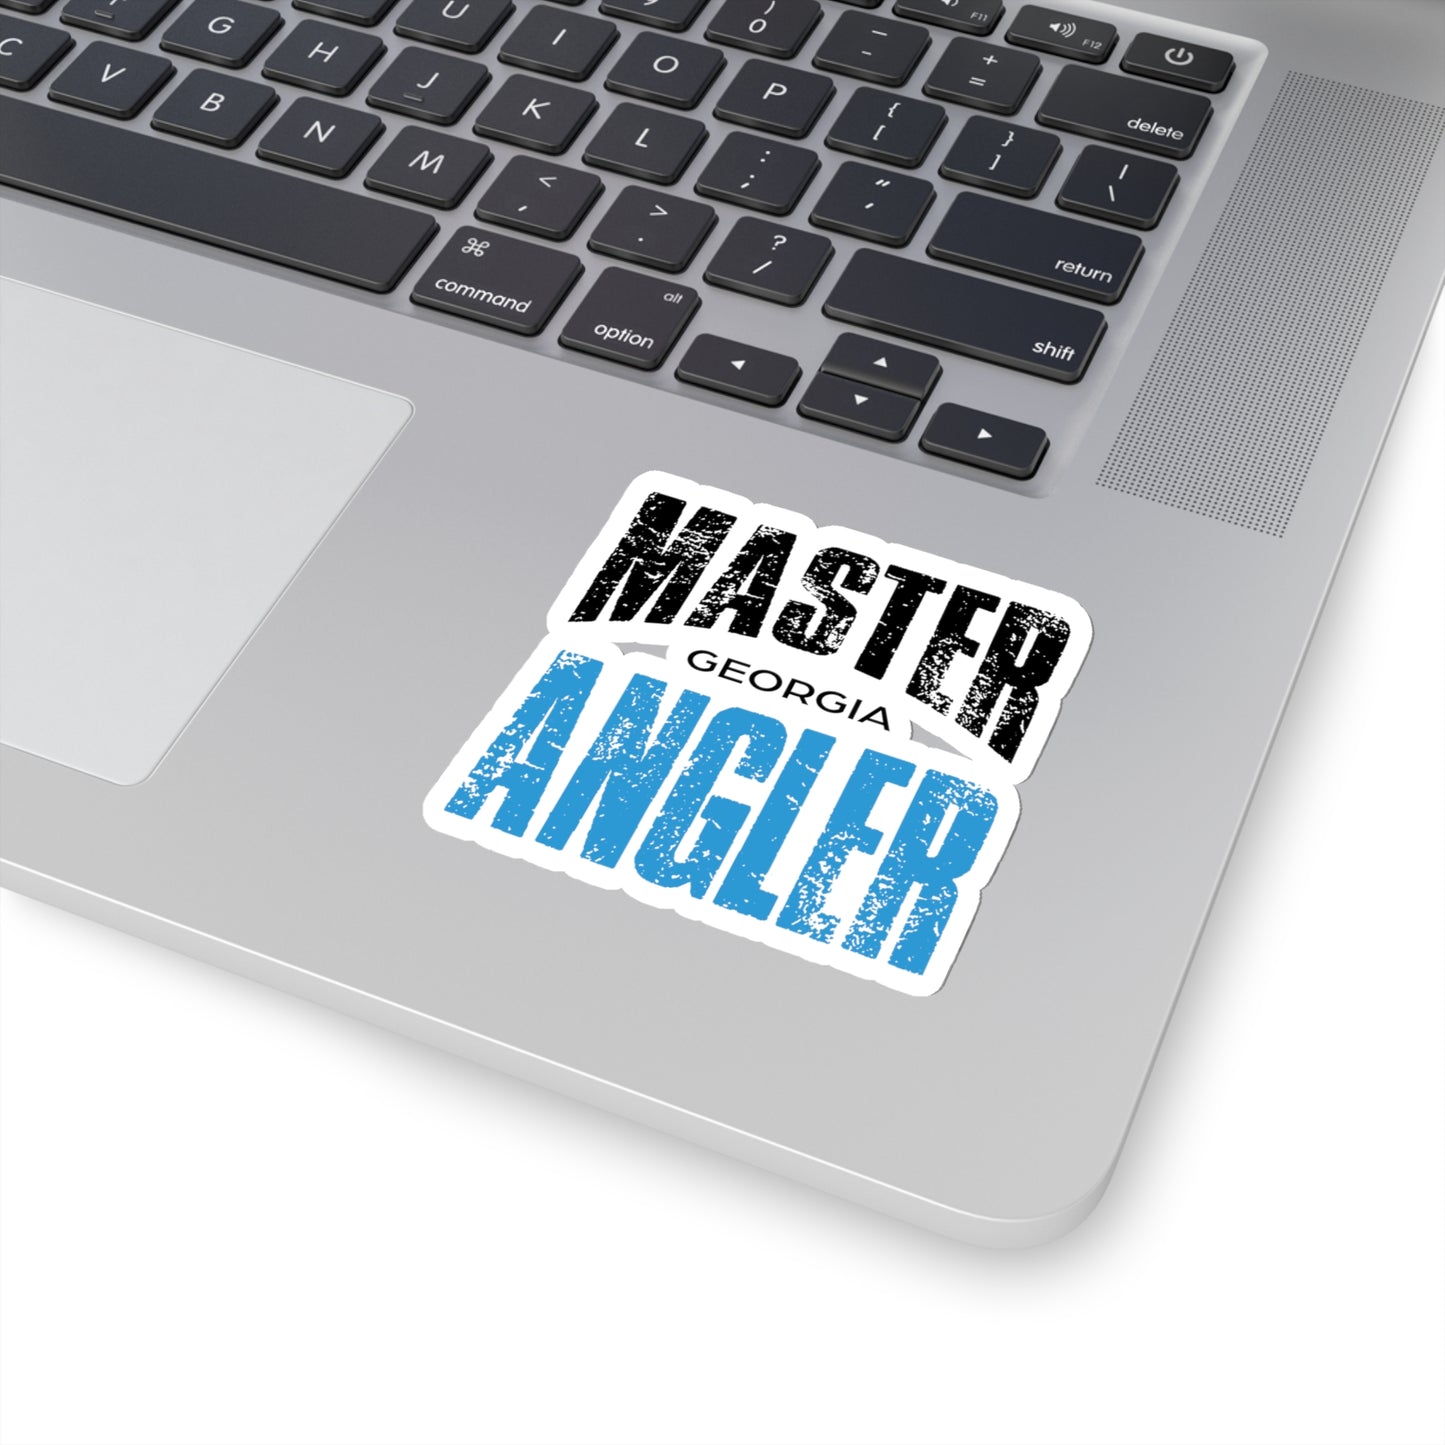 Georgia Master Angler Sticker - BLUE